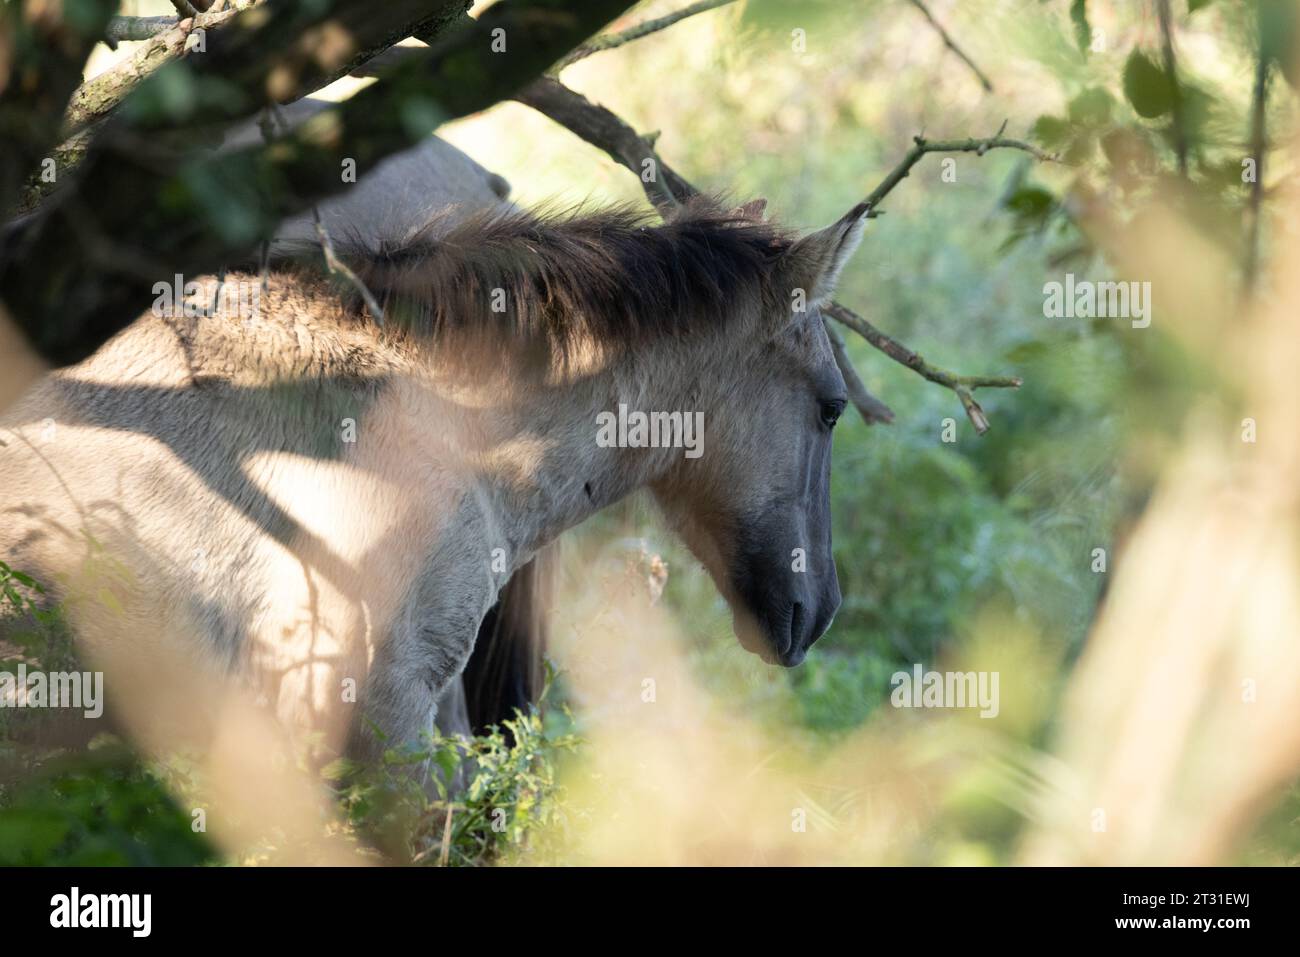 Les poneys de Konik sont utilisés pour gérer naturellement les réserves naturelles à travers l'Europe, ceux-ci sont sur la zone néerlandaise de rewilding. Banque D'Images